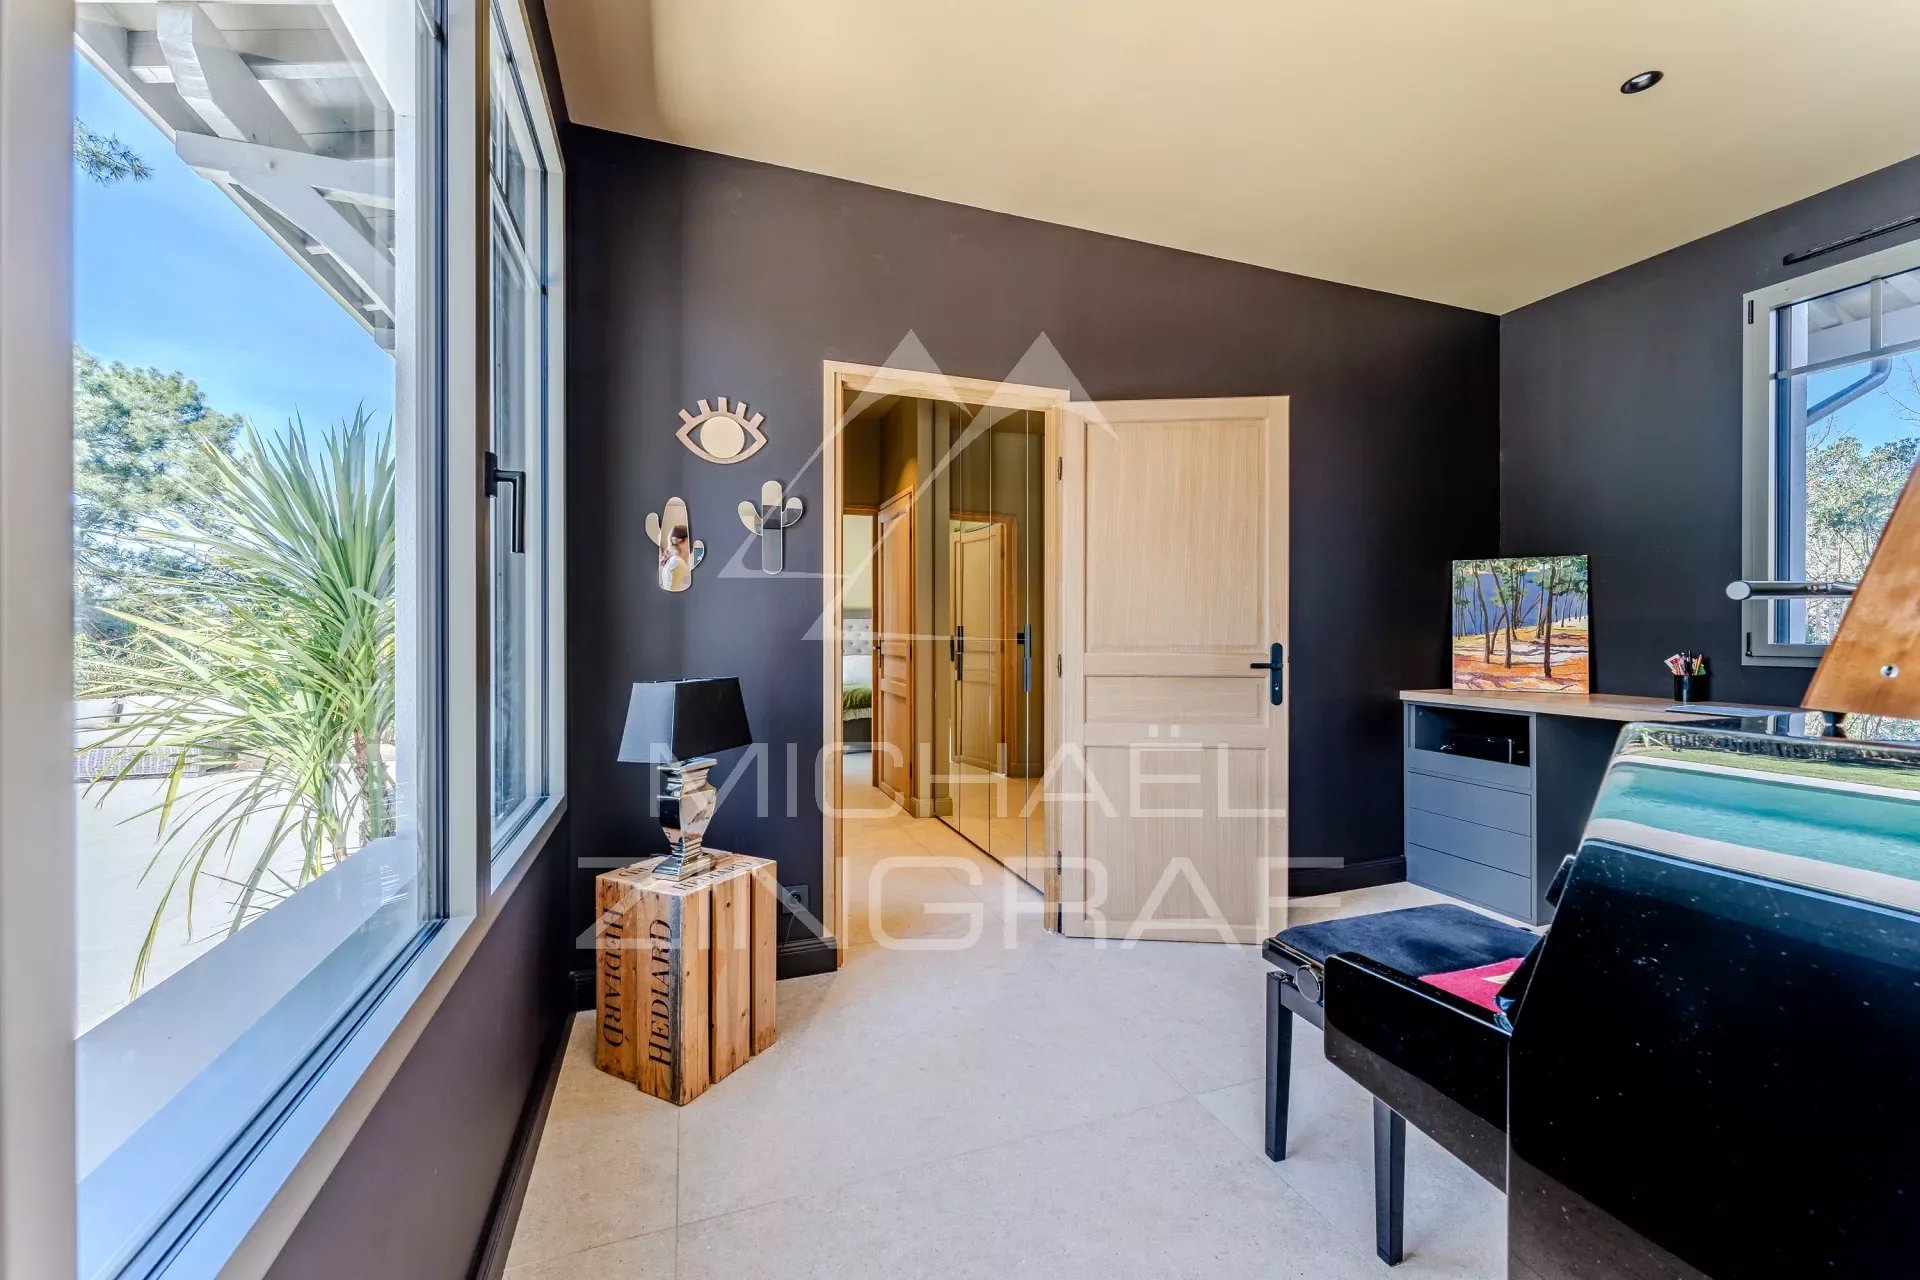 Abatilles - Villa 6 bedrooms - Luxurious amenities